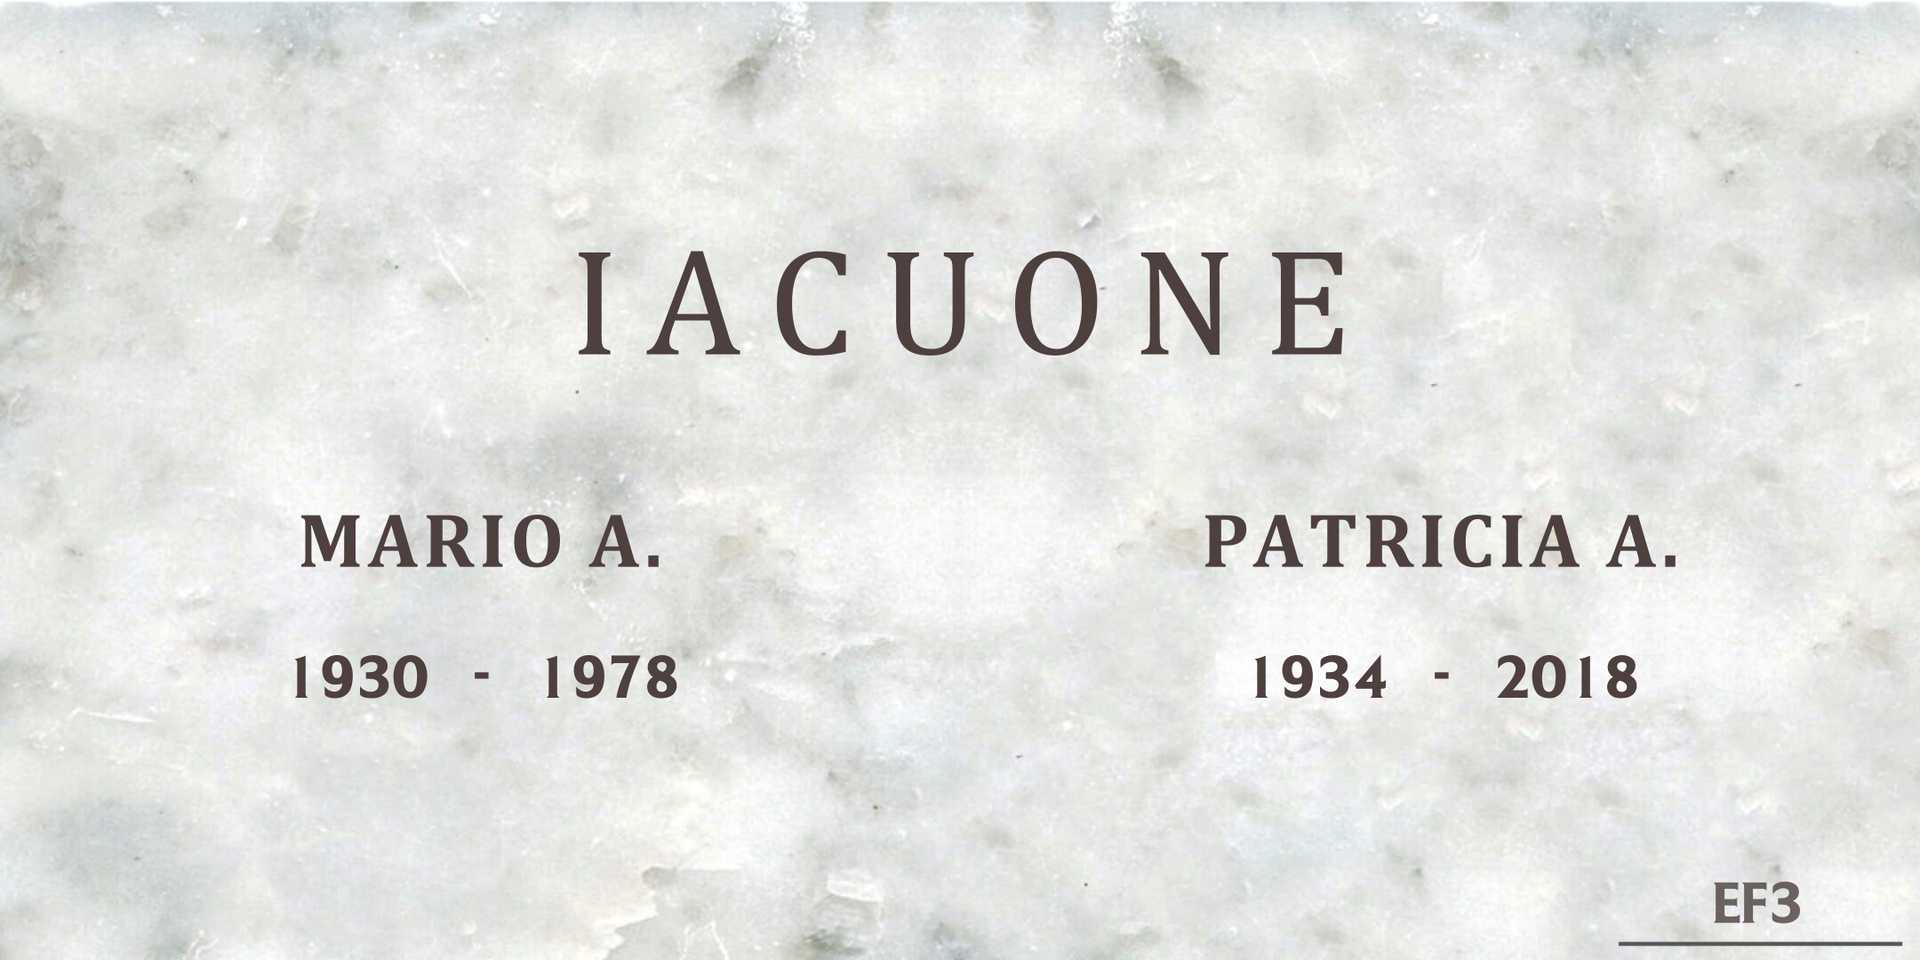 Patricia A. Iacuone's grave